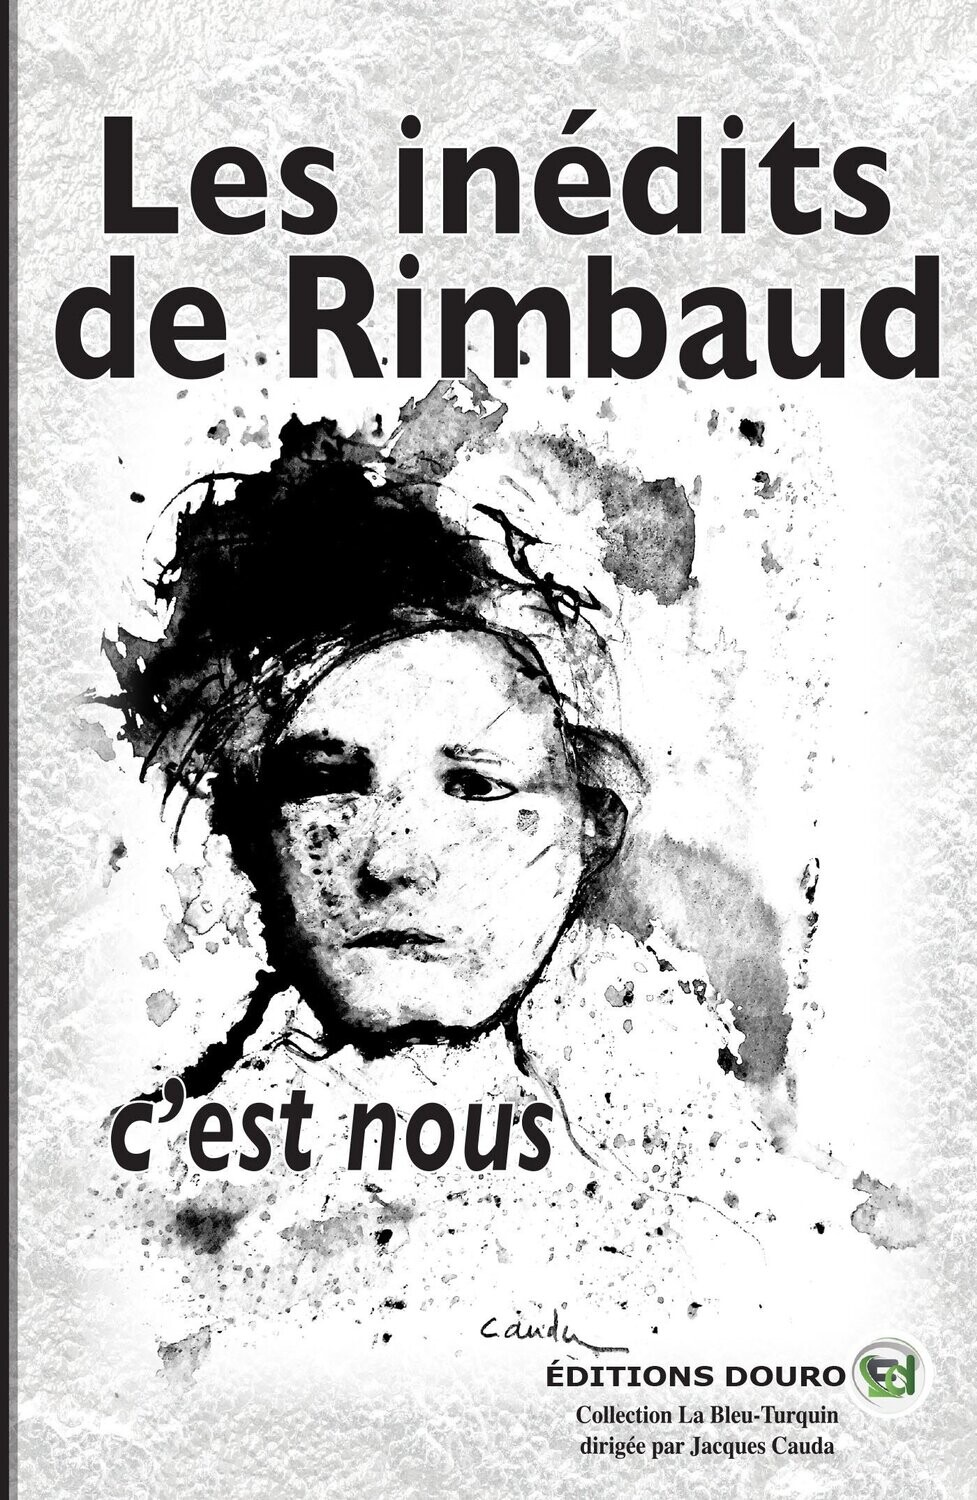 Les inédits de Rimbaud, c’est nous